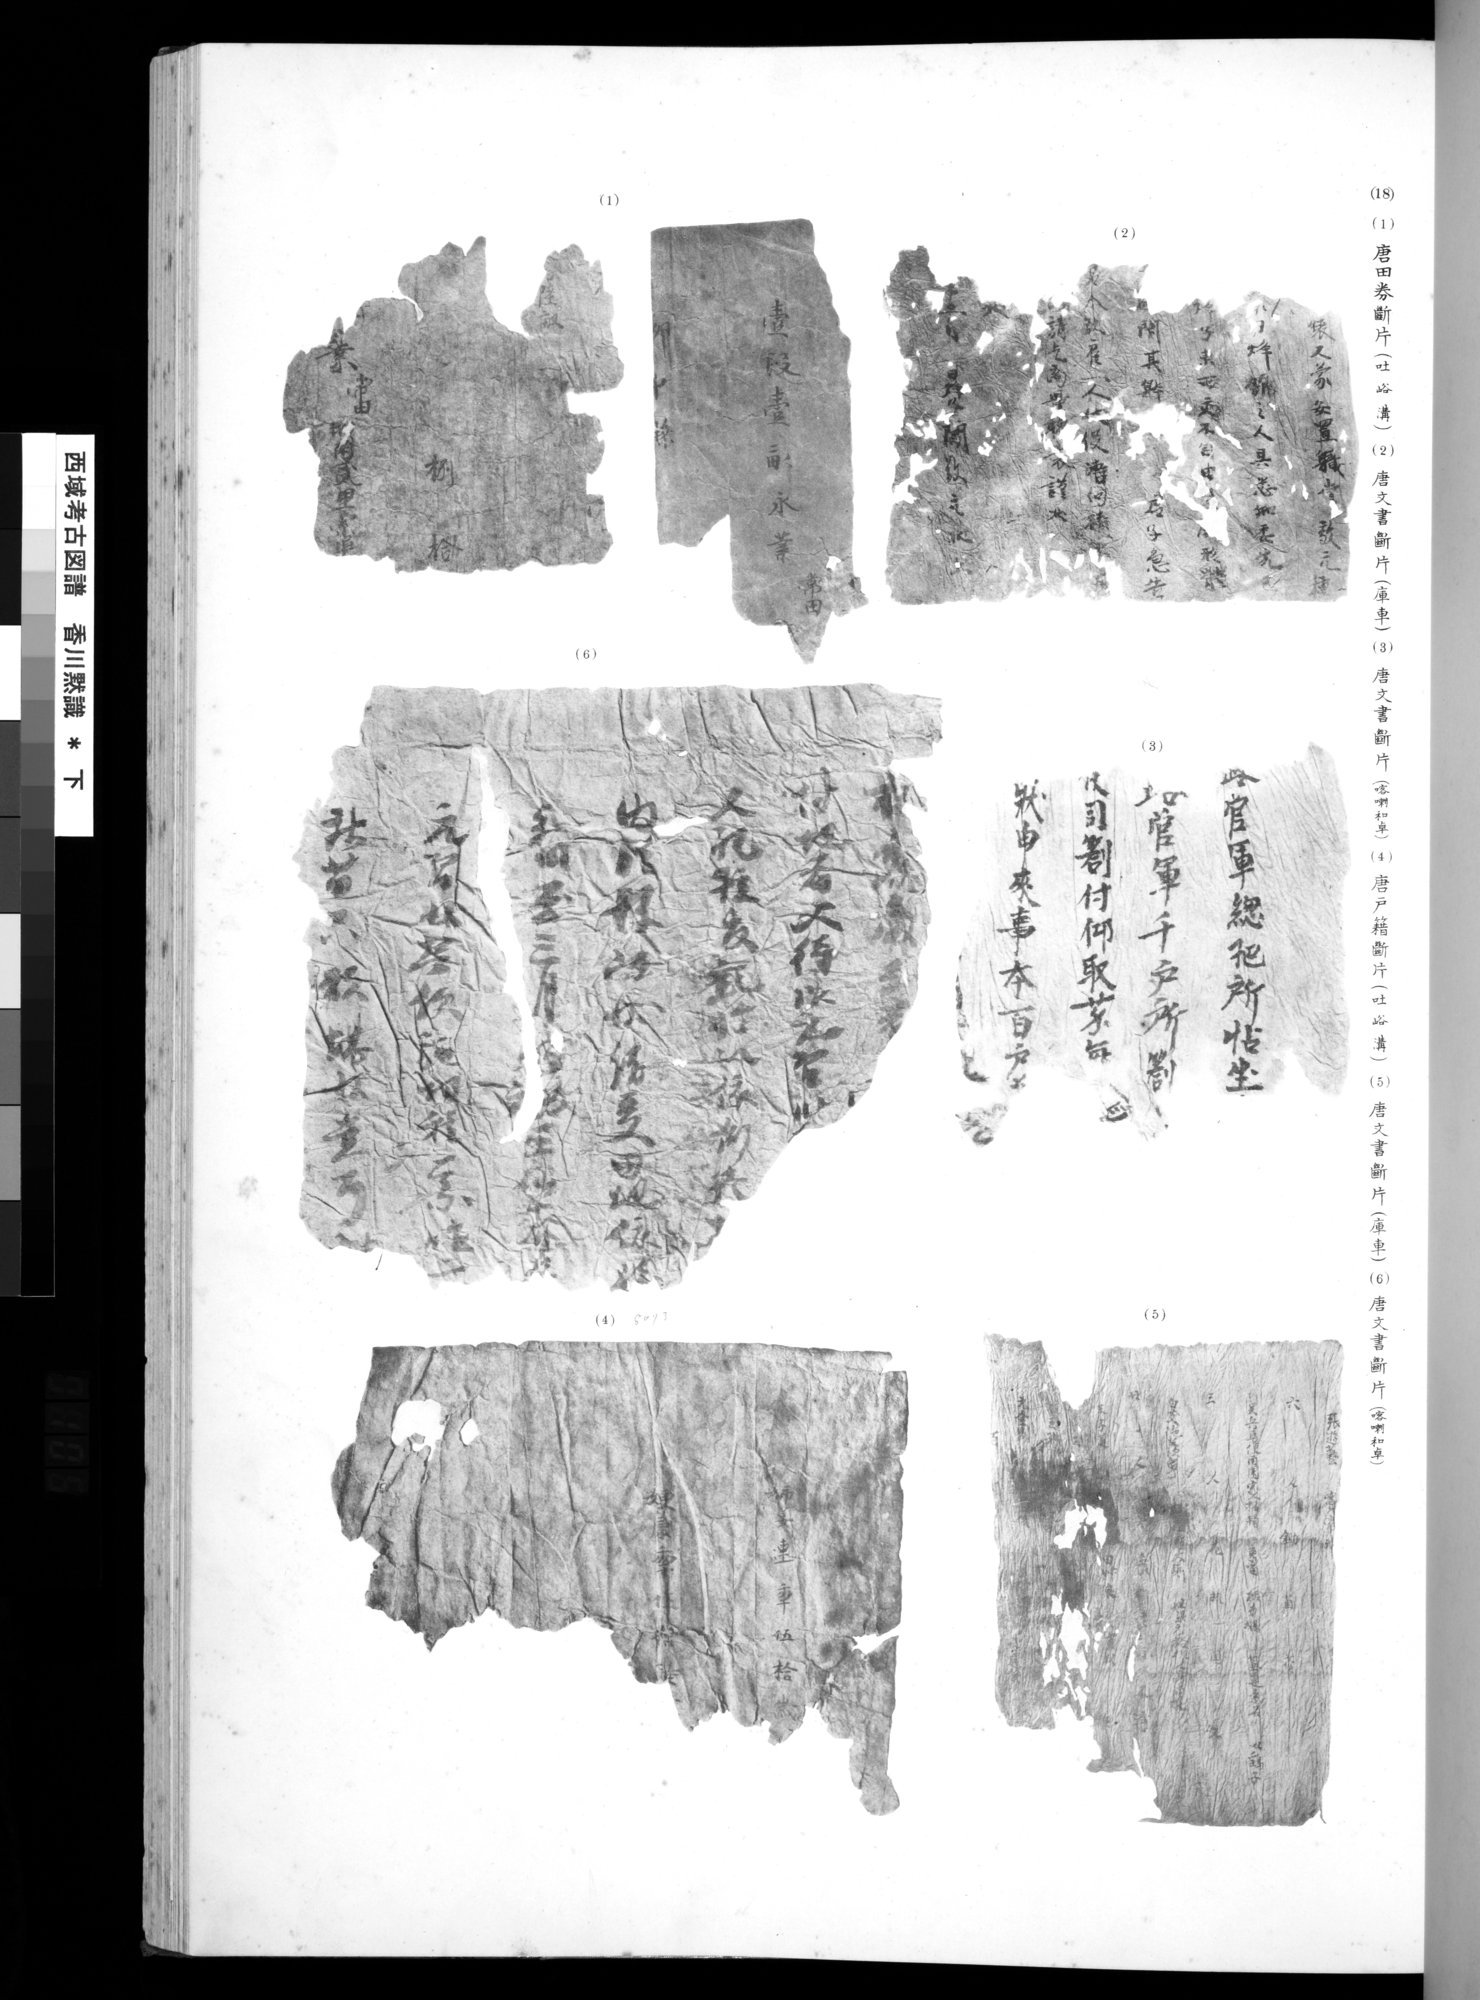 西域考古図譜 : vol.2 / Page 209 (Grayscale High Resolution Image)